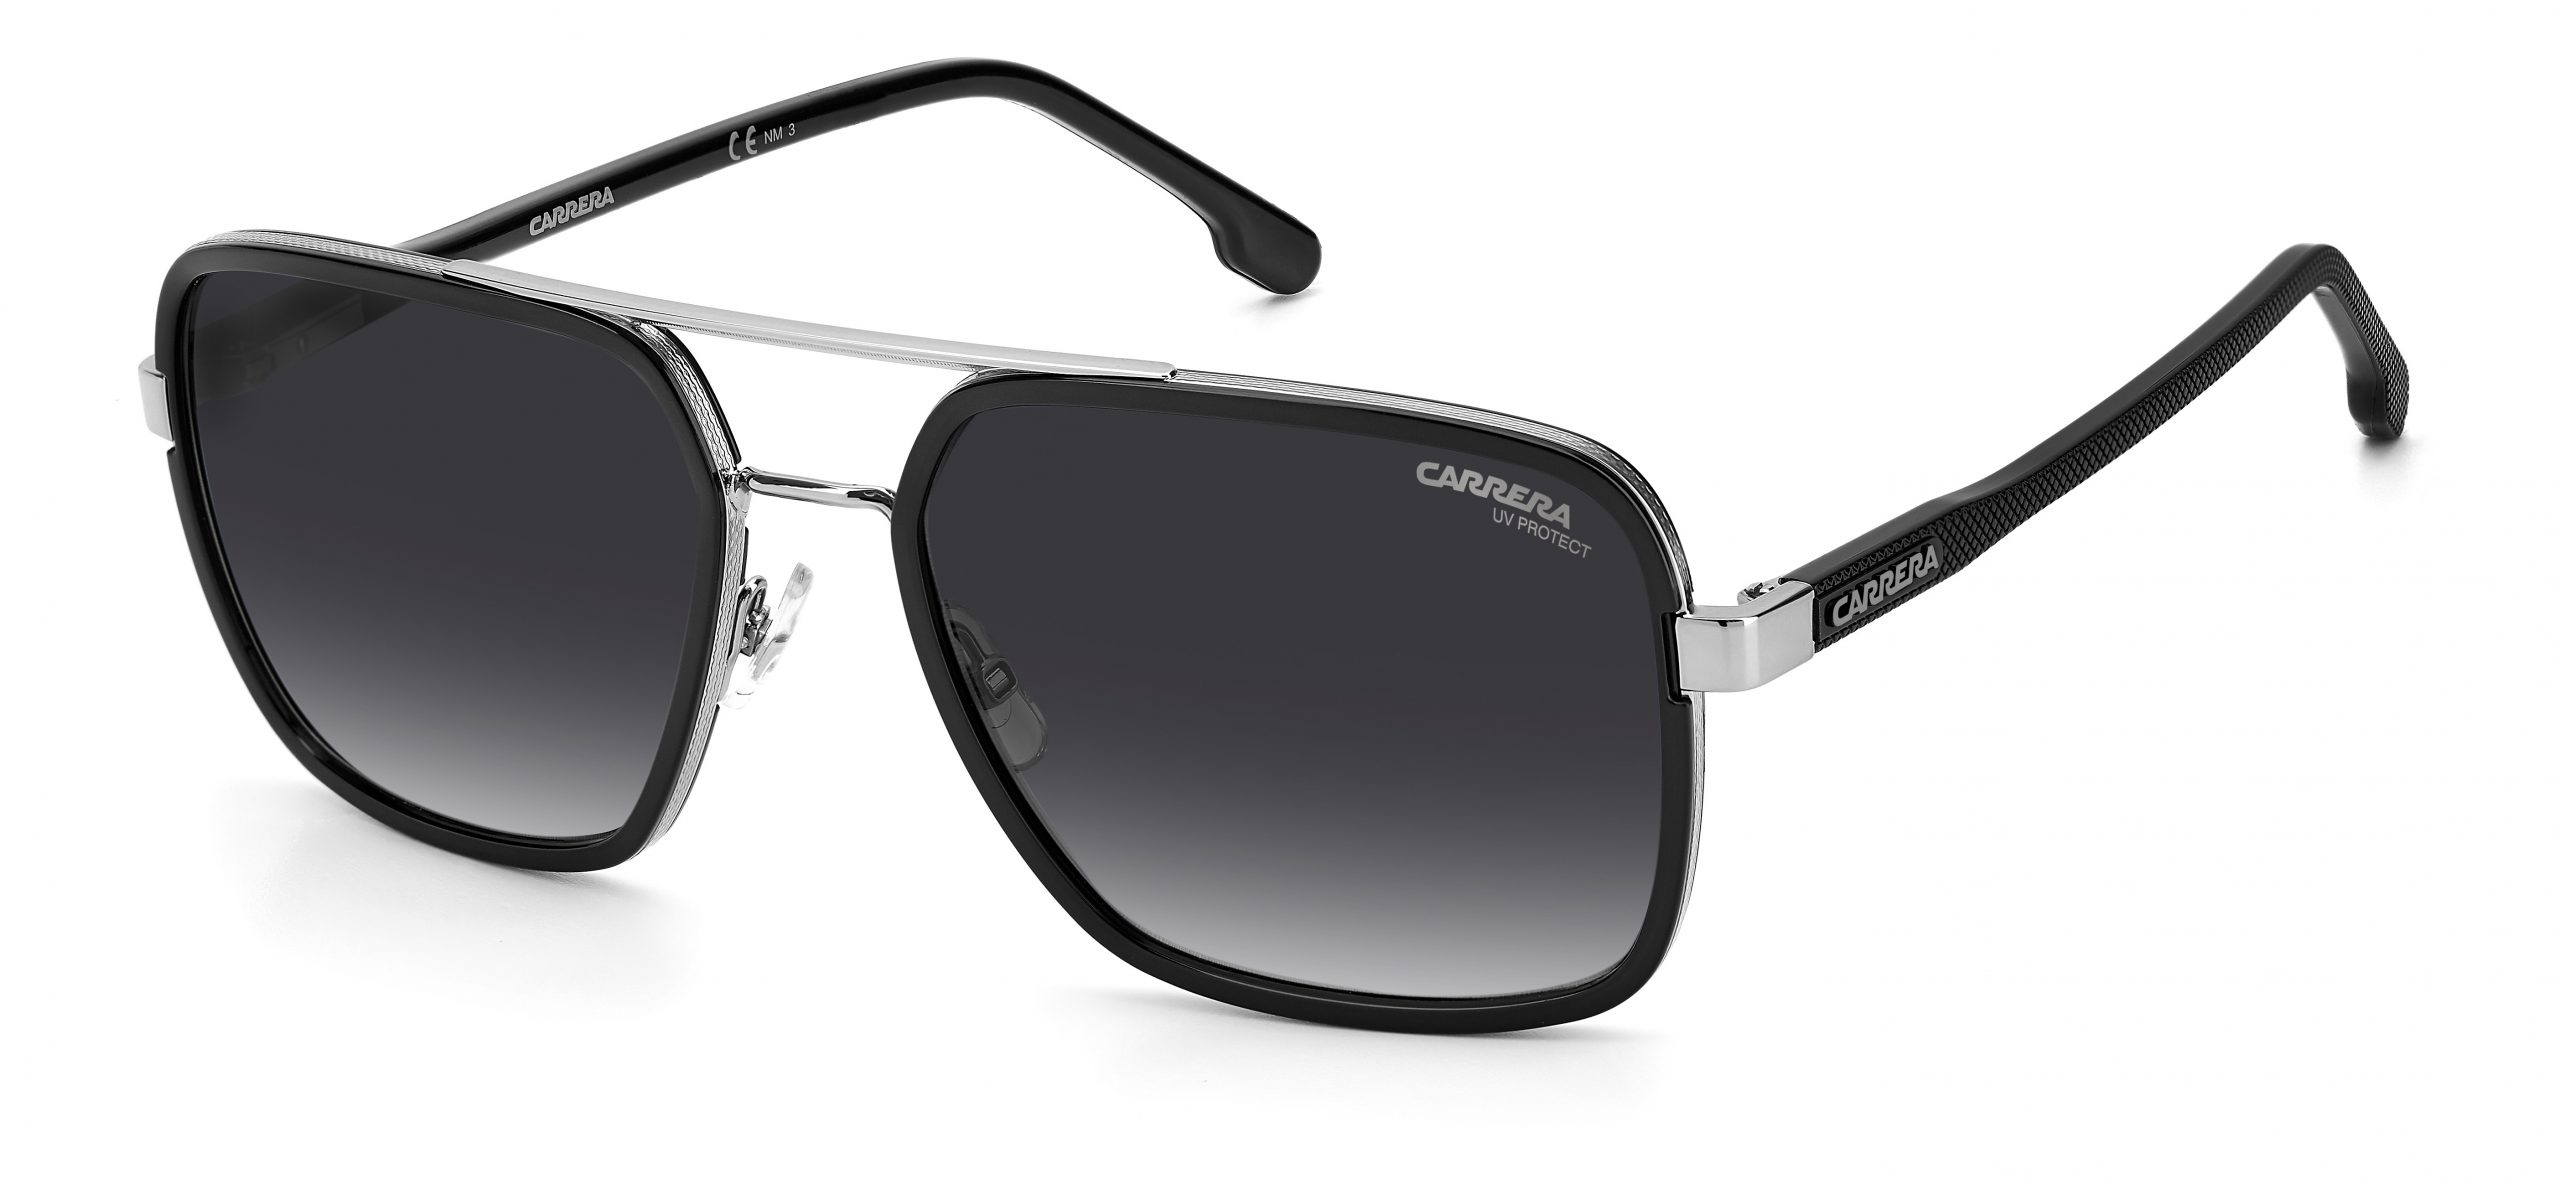 256/S 85K 9O CARRERA Sunglasses | George & Matilda Eyecare and Optometrist